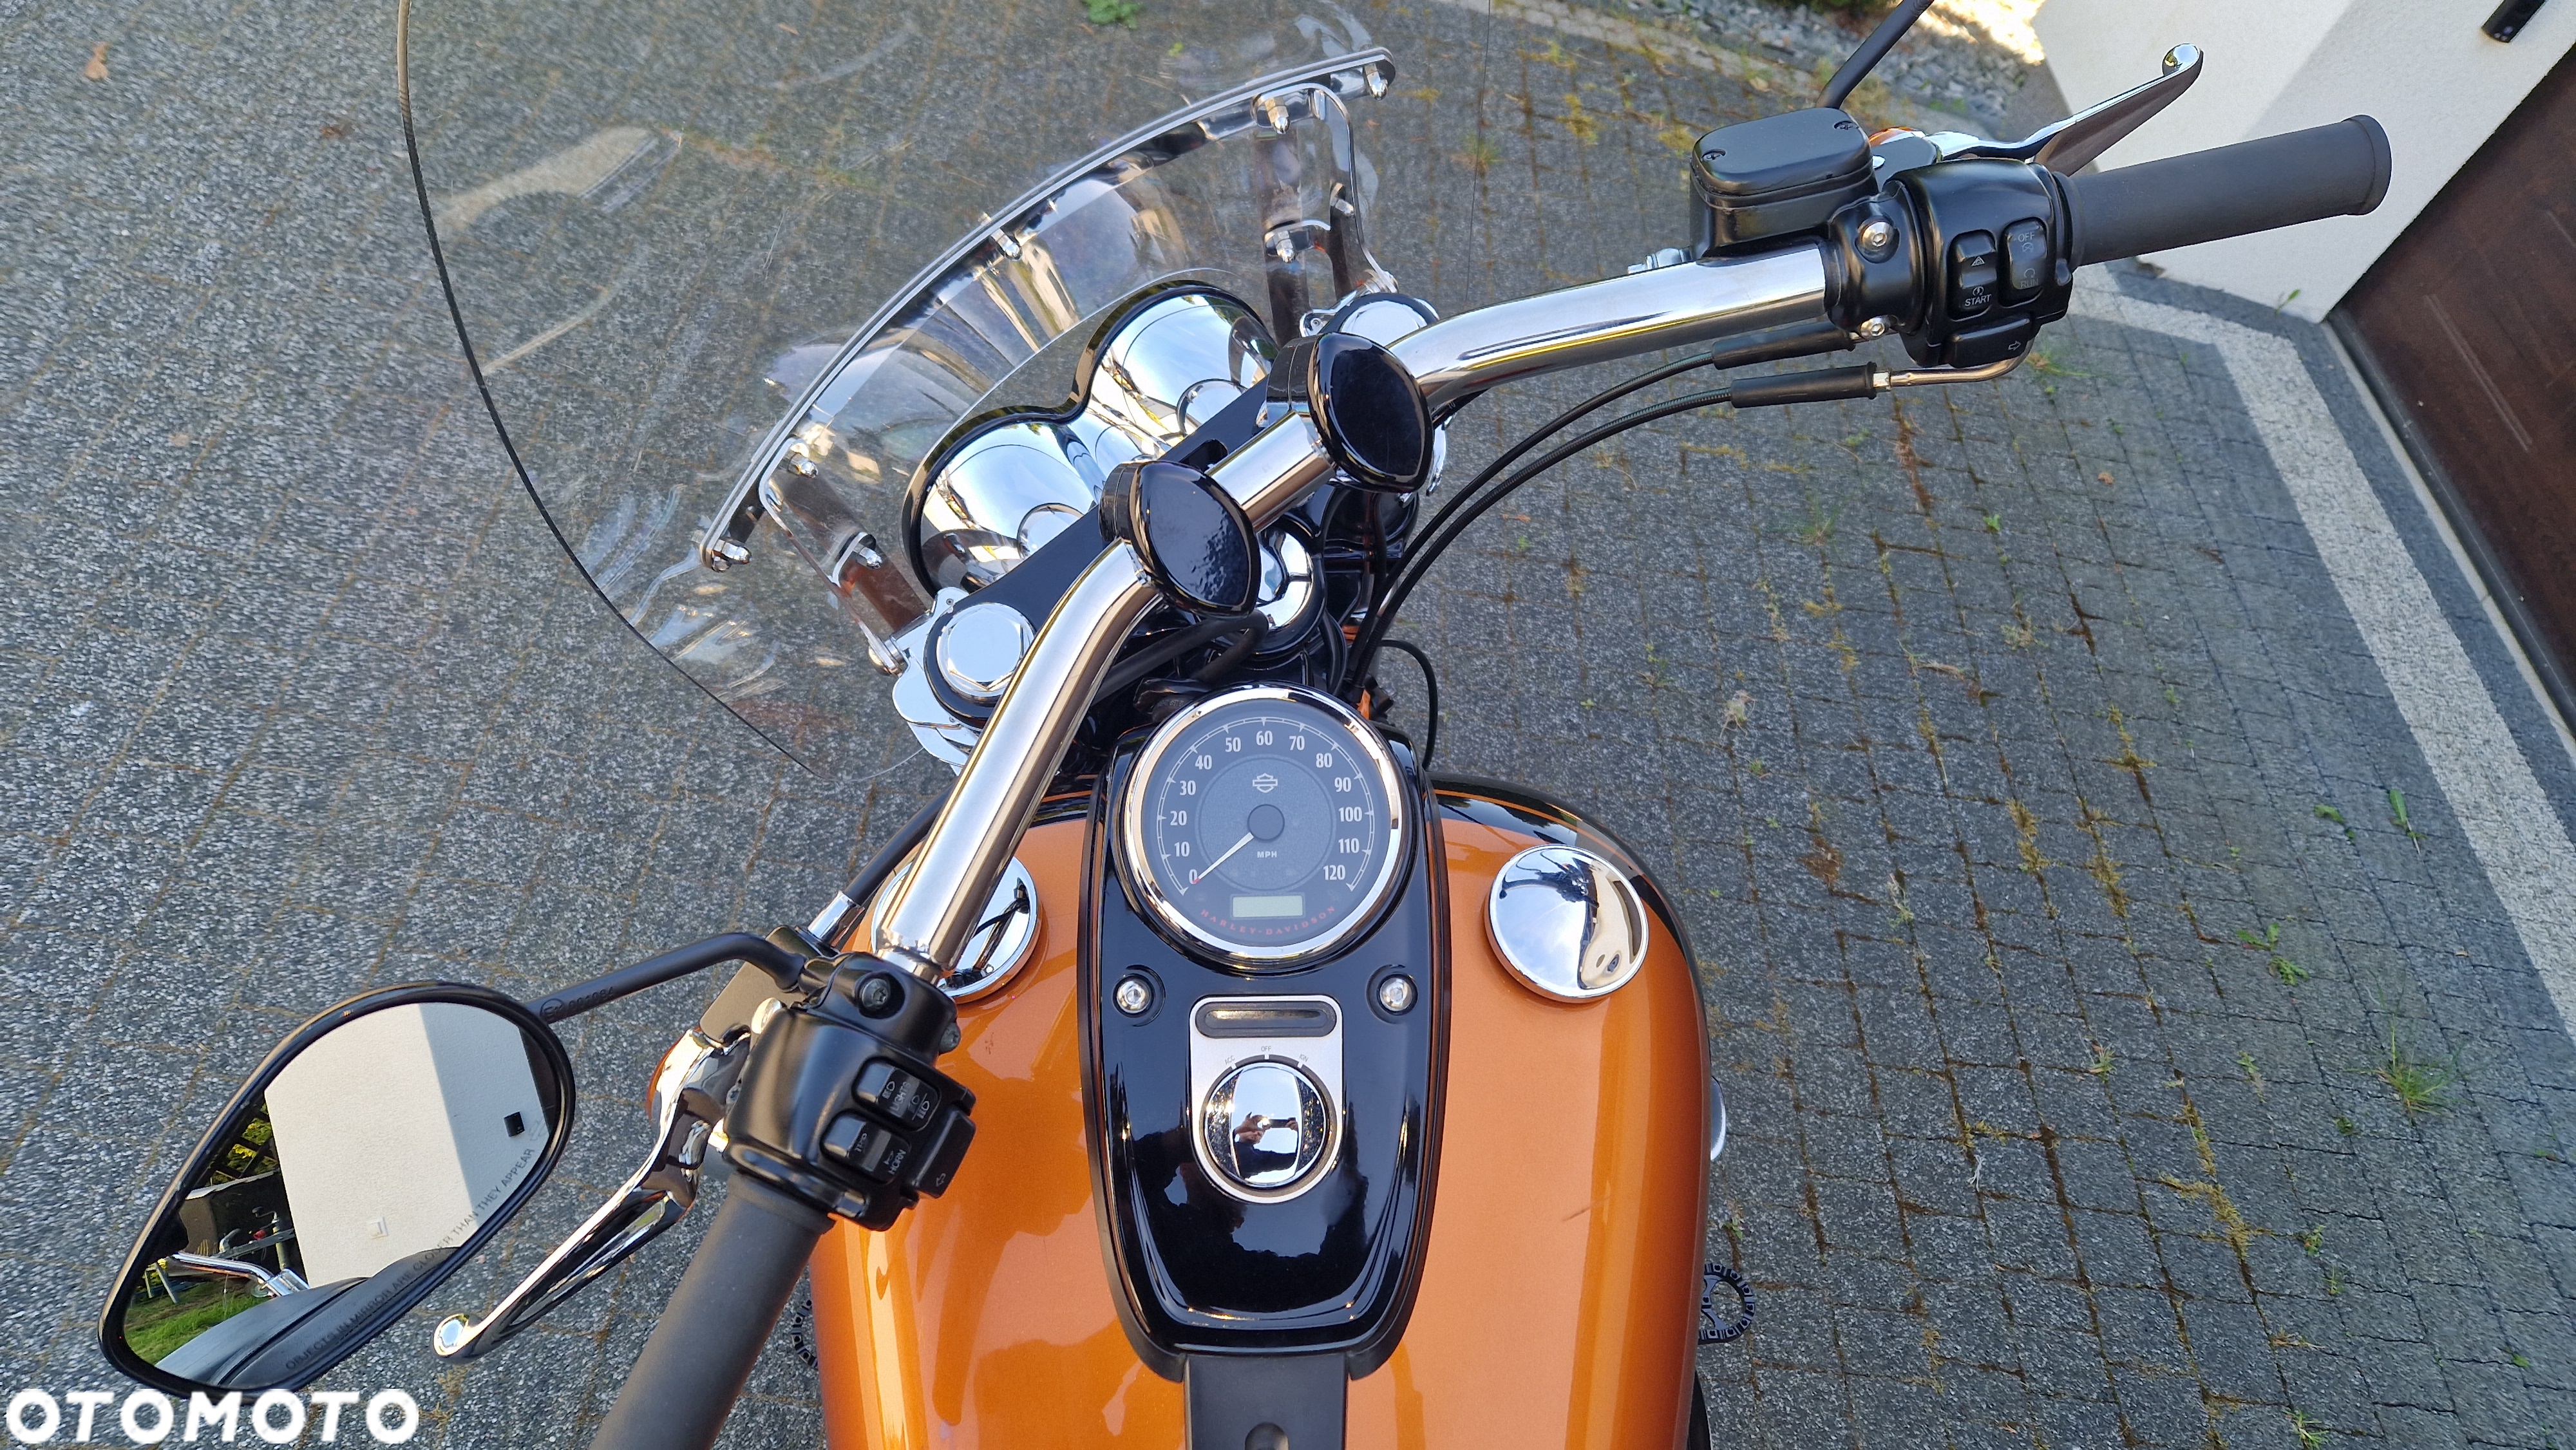 Harley-Davidson Dyna Fat Bob - 11